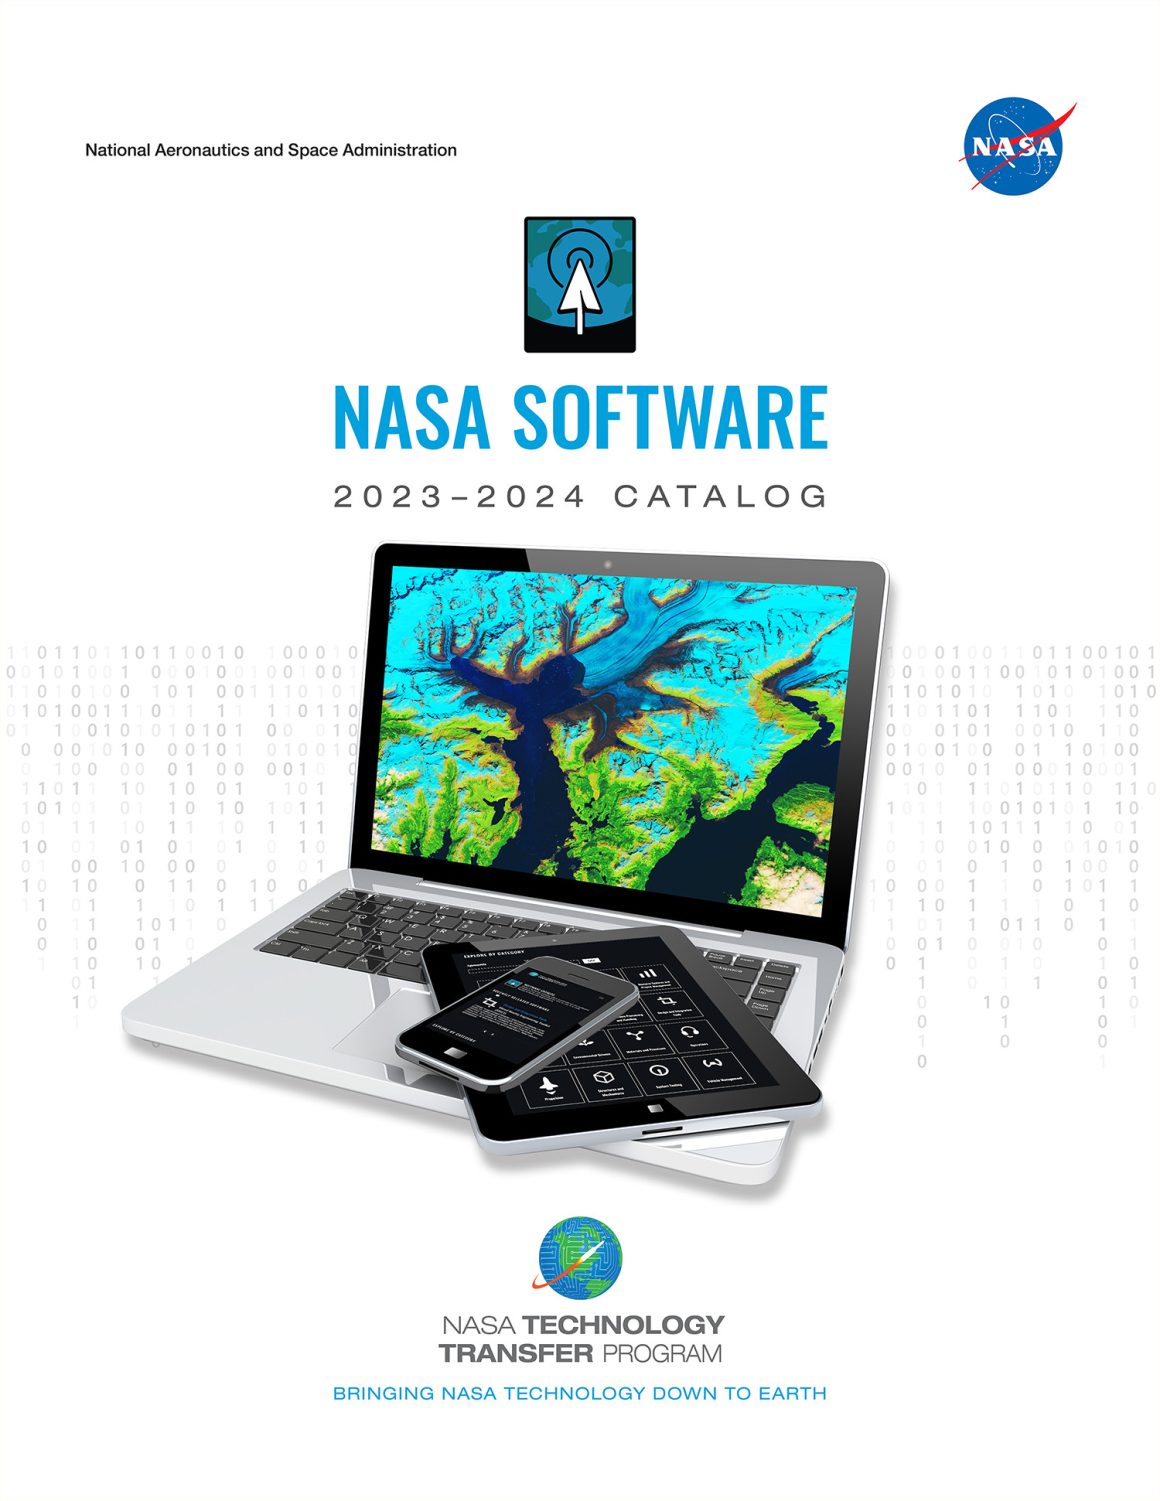 The 2023-2024 NASA Software Catalog makes a variety of NASA programs available for download.